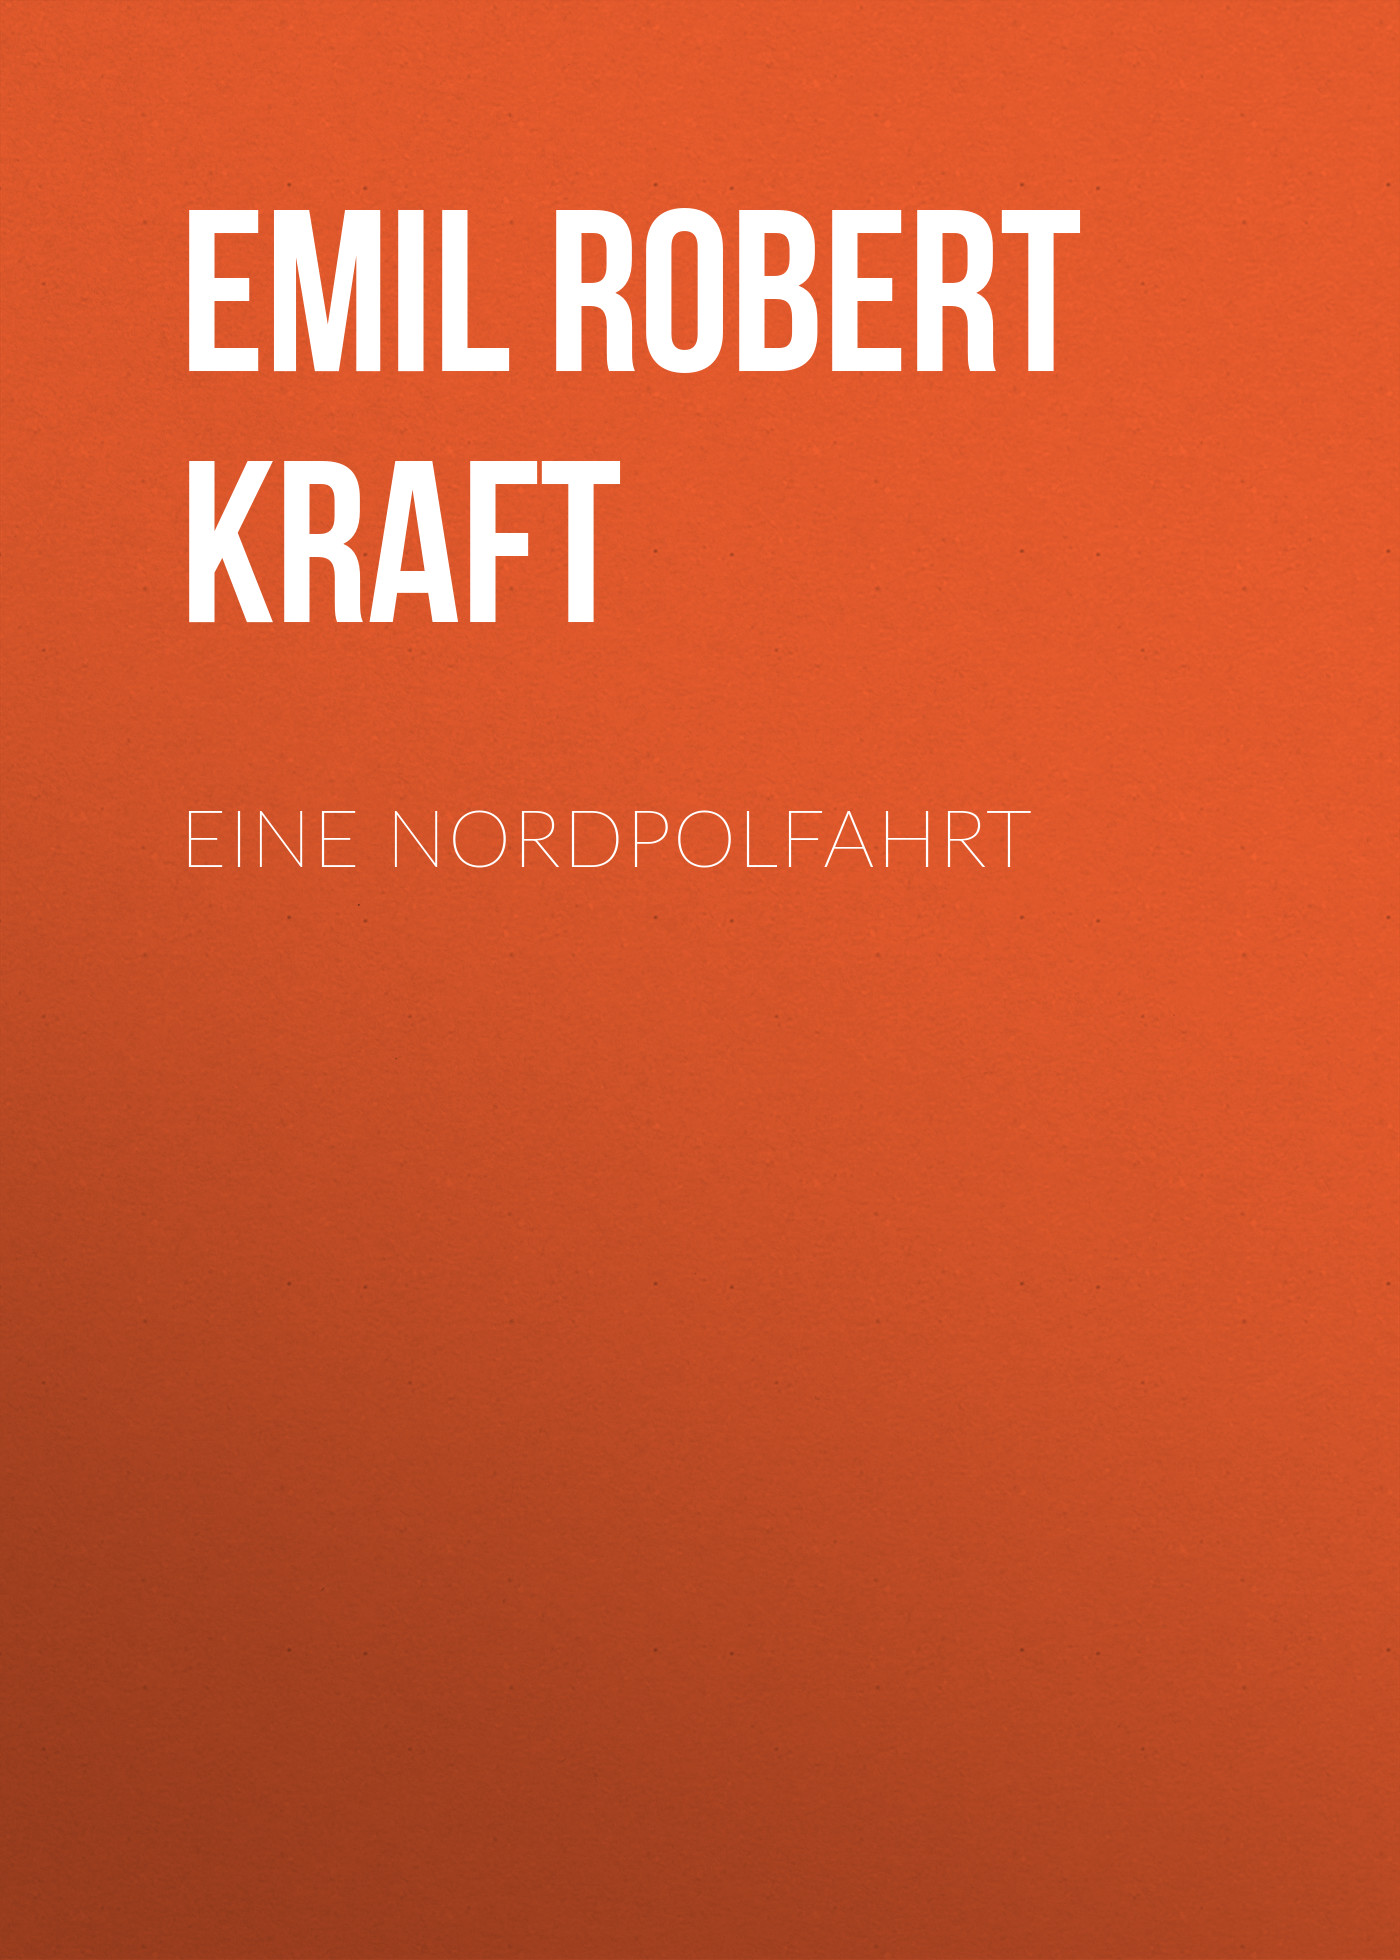 Книга Eine Nordpolfahrt из серии , созданная Emil Robert Kraft, может относится к жанру Зарубежная классика. Стоимость электронной книги Eine Nordpolfahrt с идентификатором 48633212 составляет 0 руб.